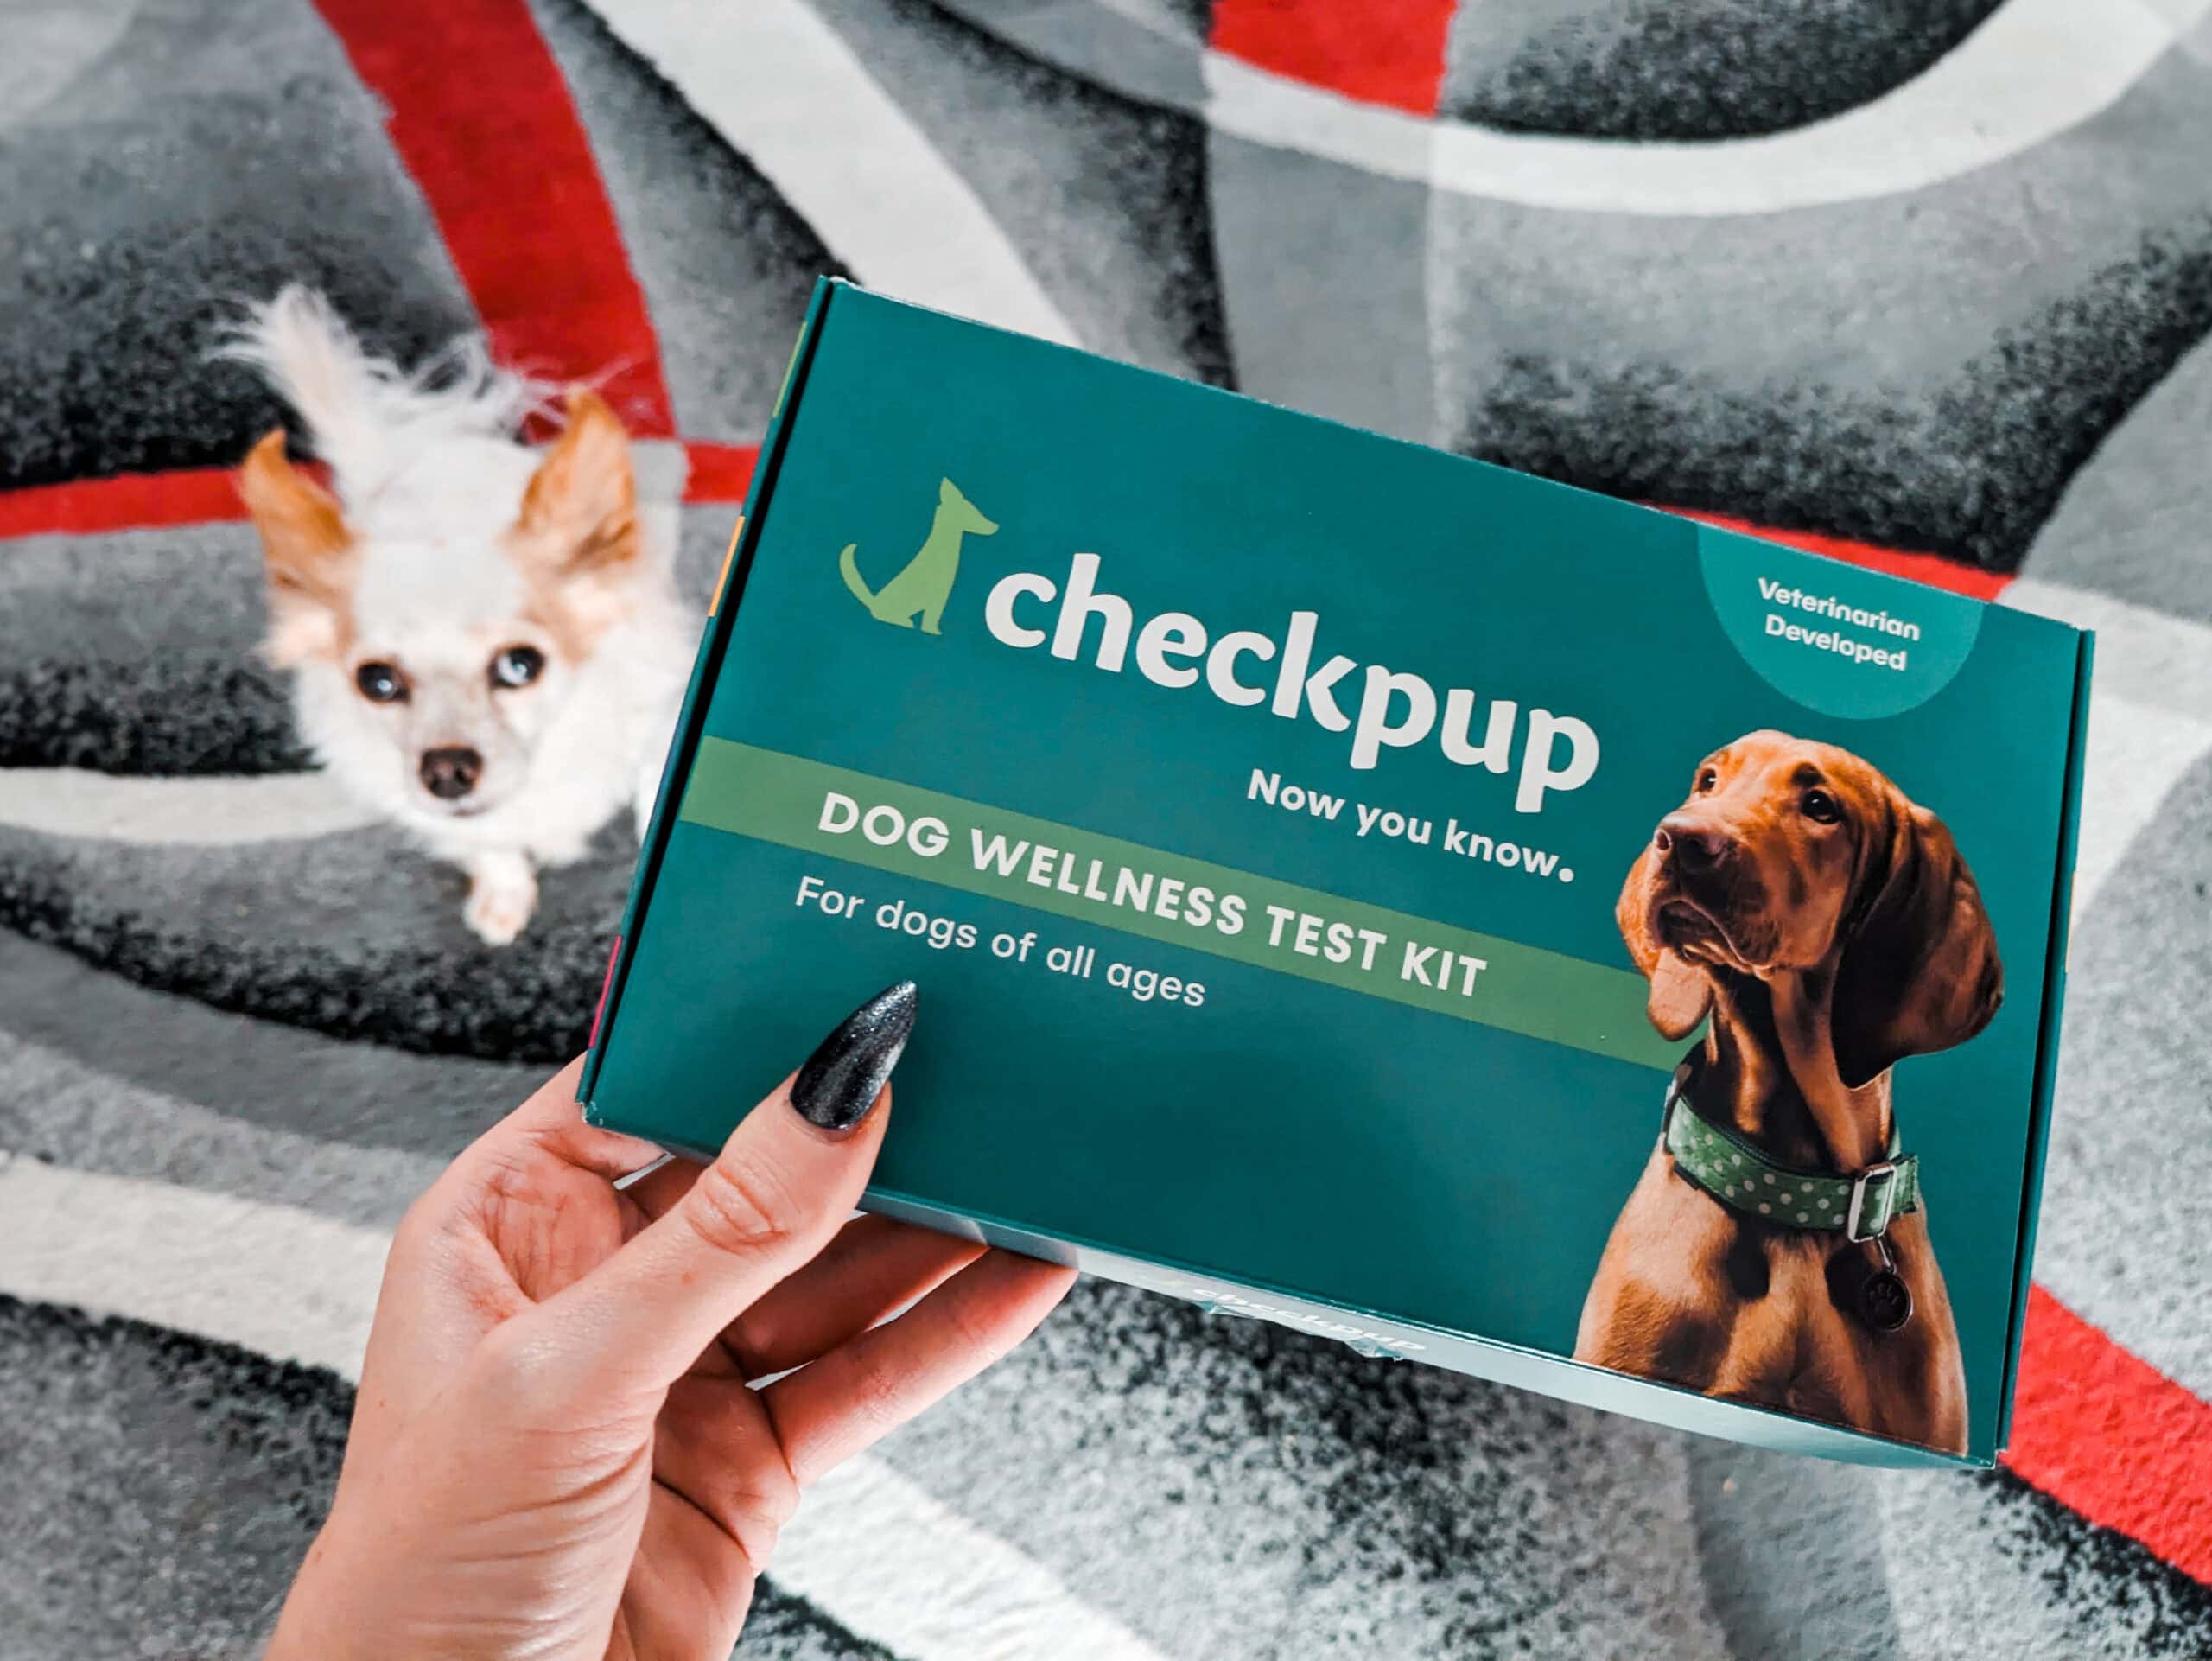 Checkpup_Dog Wellness Test